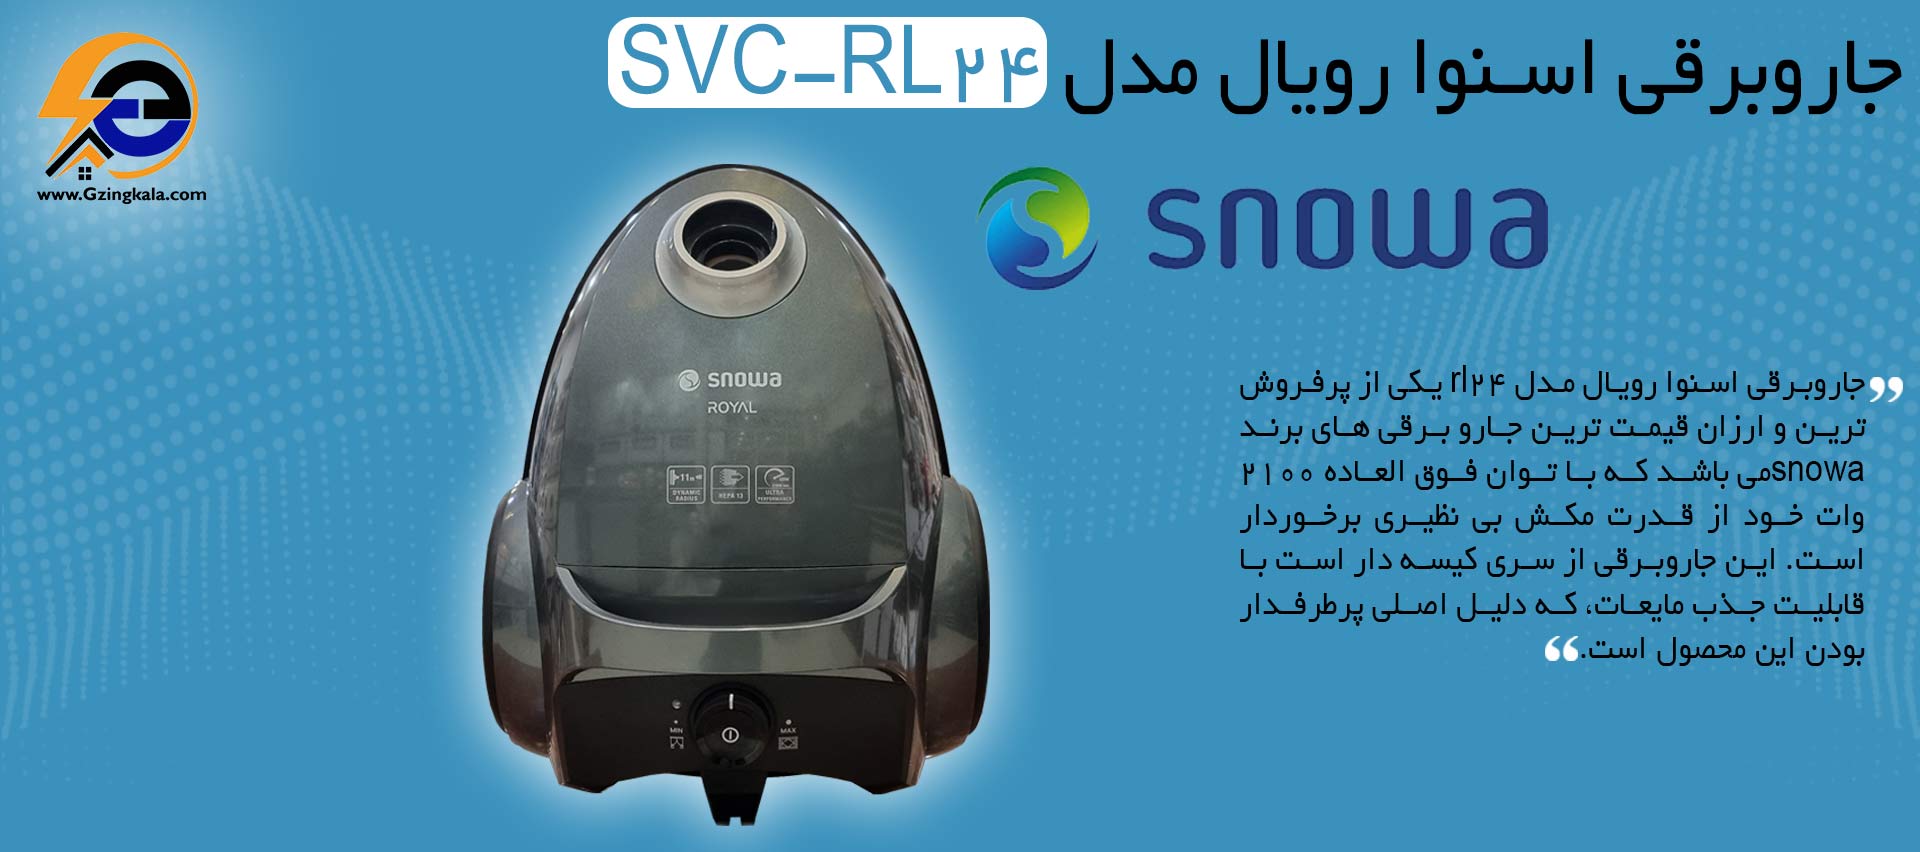 جاروبرقی اسنوا رویال مدل SVC-RL24